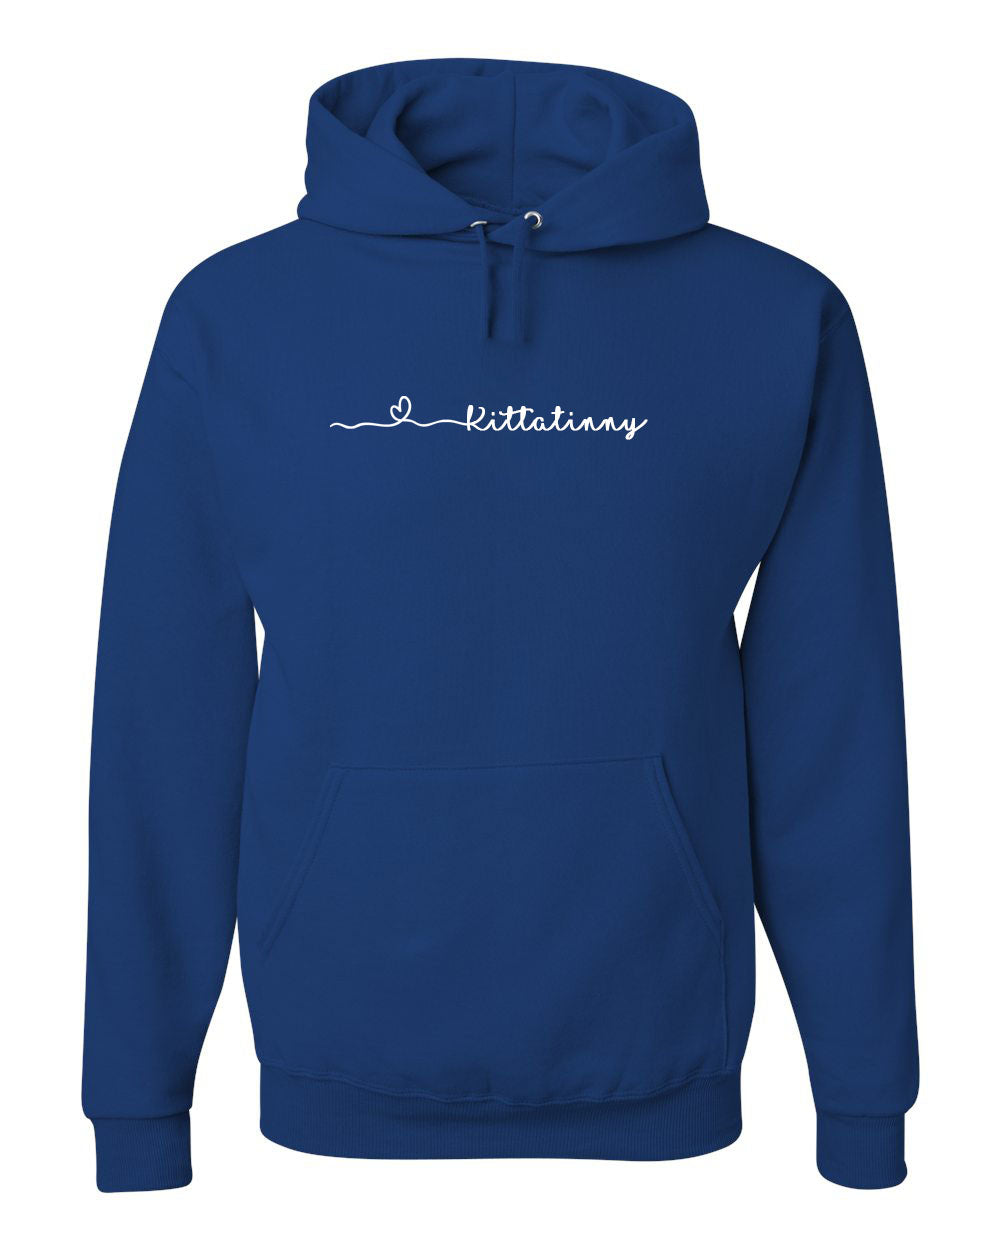 Stillwater Design 9 Hooded Sweatshirt